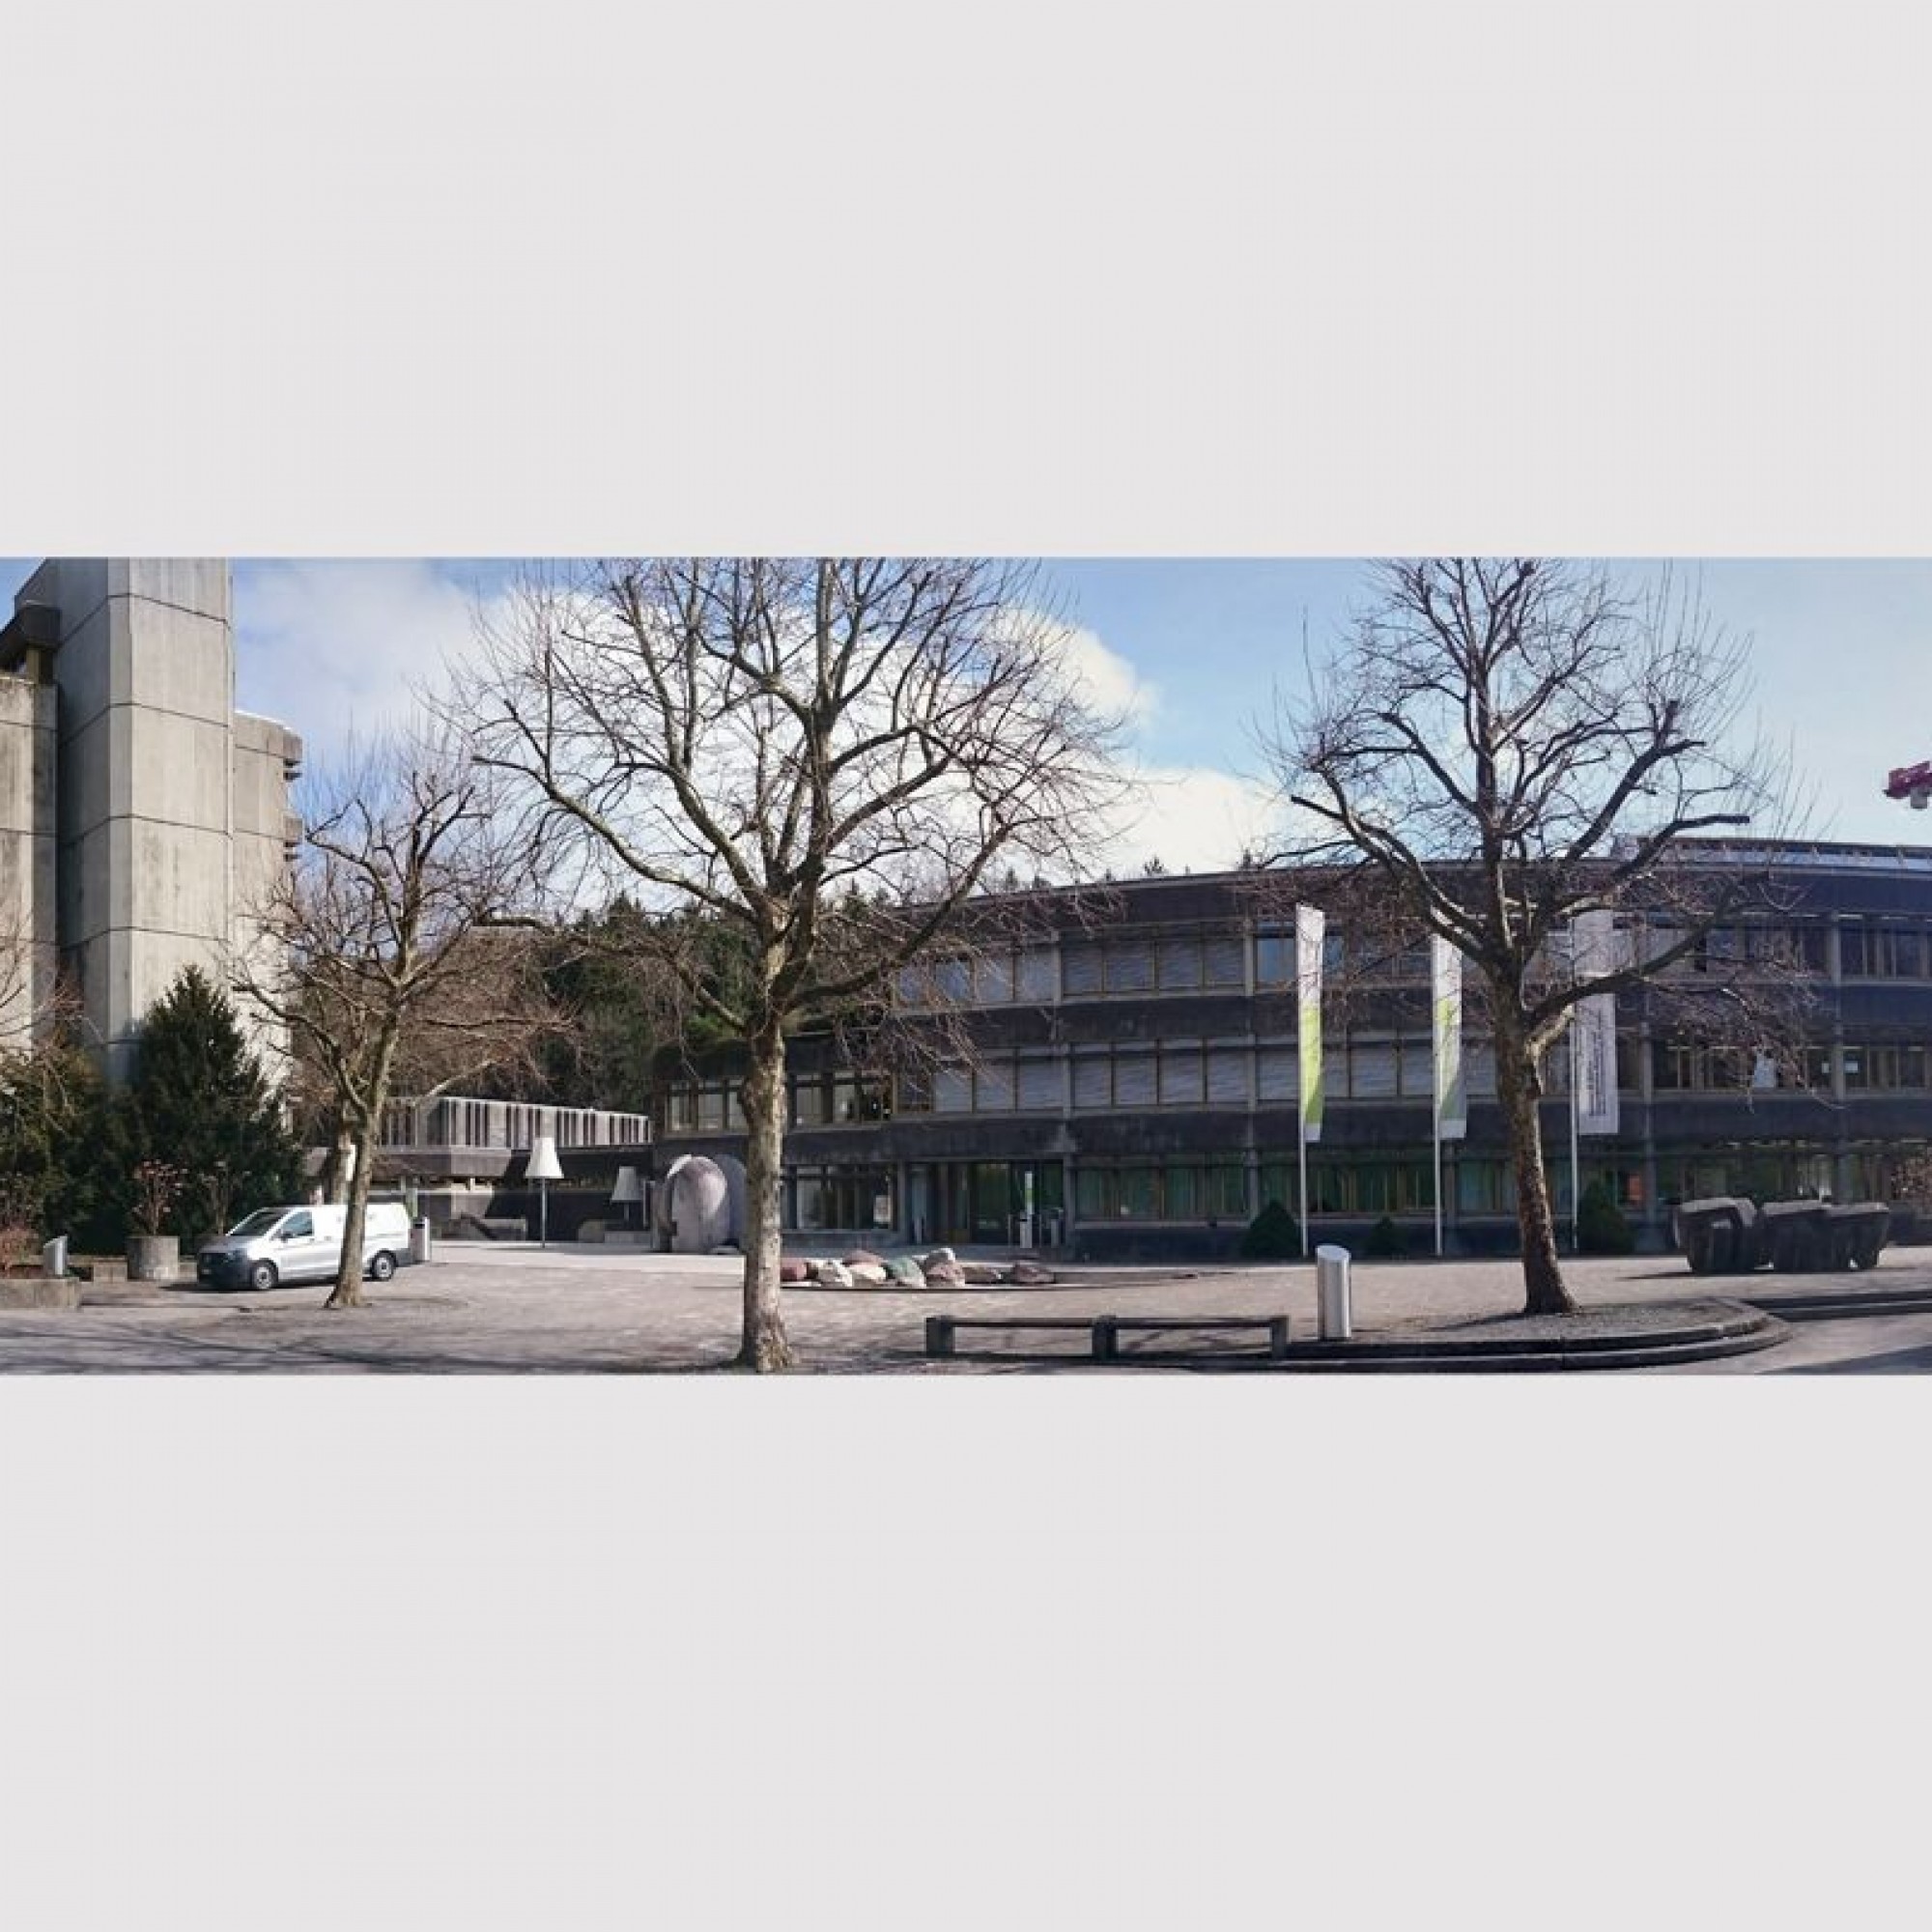 Gewerbliches Berufs- und Weiterbildungszentrum St. Gallen.